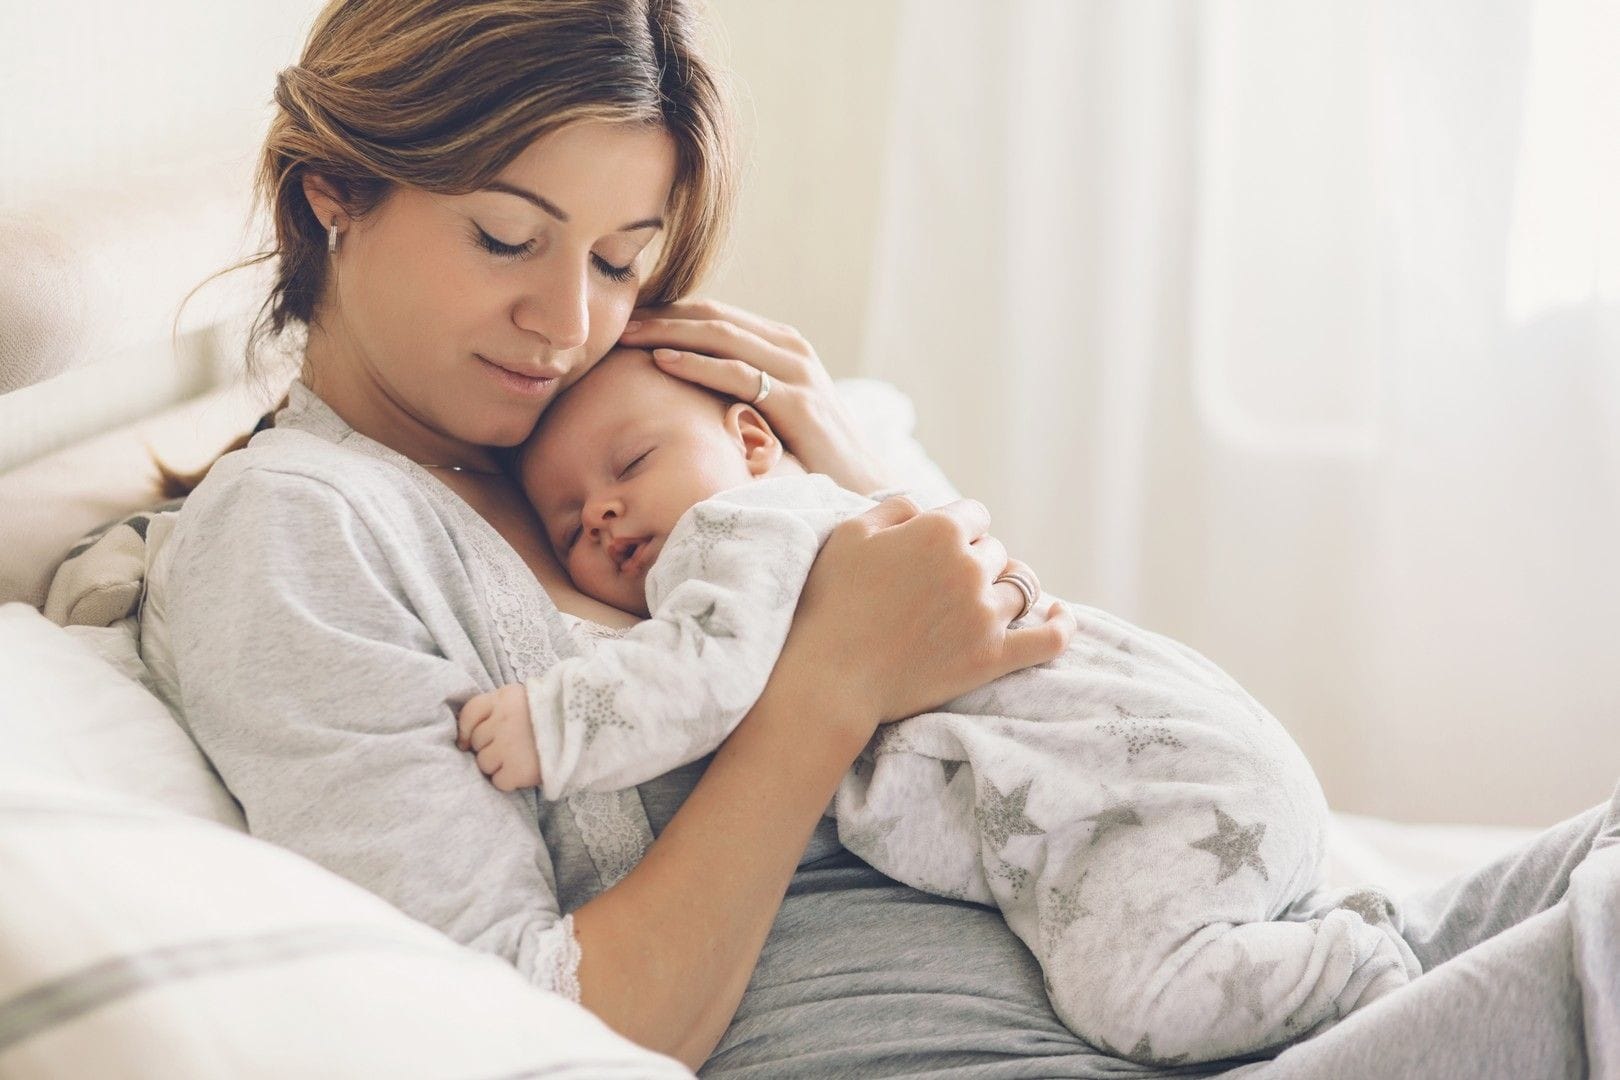 Breastfeeding and postnatal support